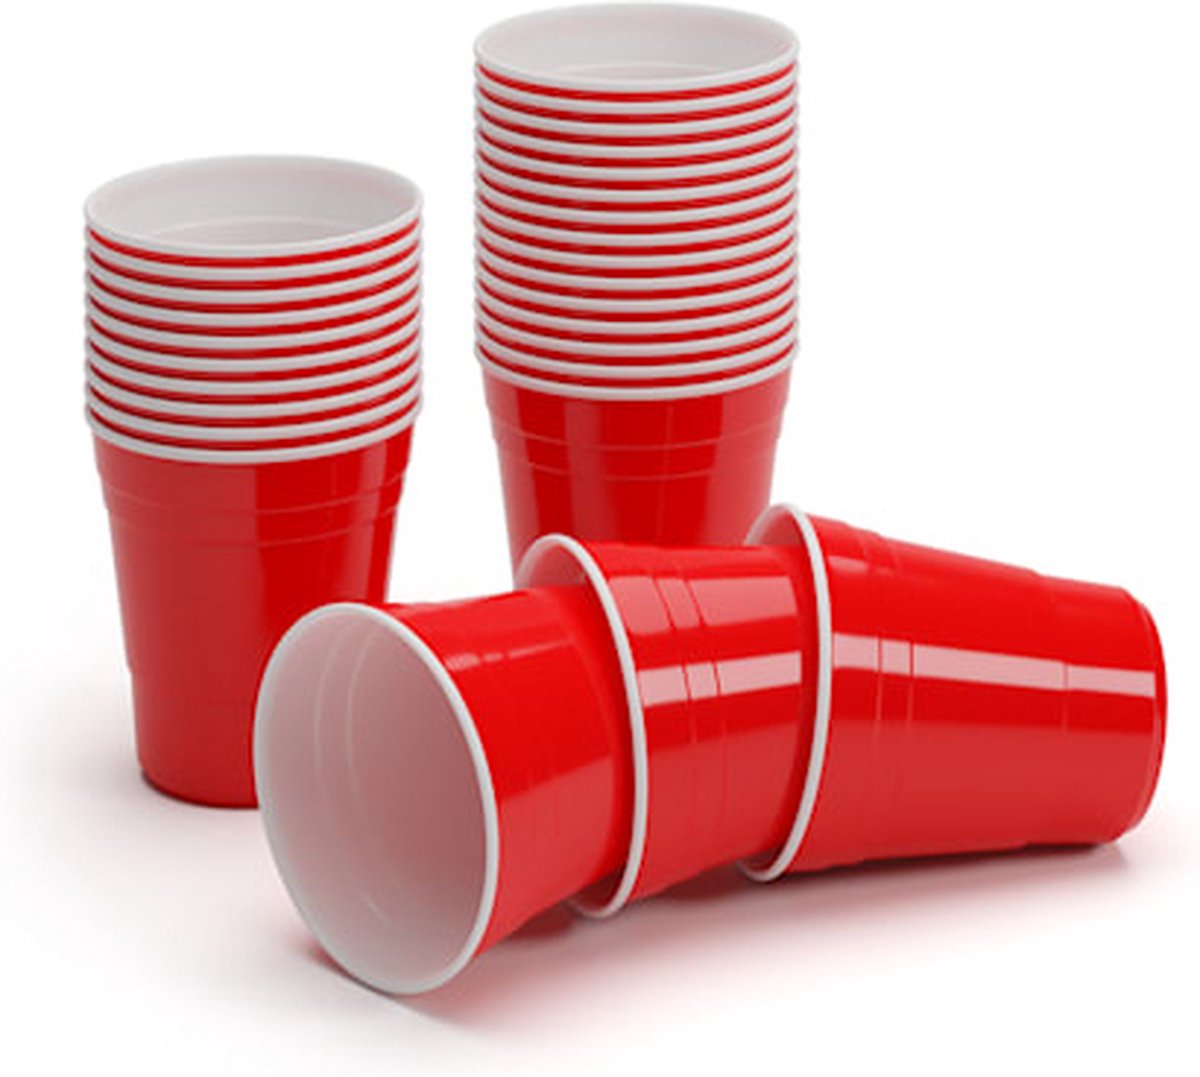 BeerCup Nadal 10 Oz rode party bekers - 300 stuks - Geschikt voor mini Beer Pong spel - 295 ml